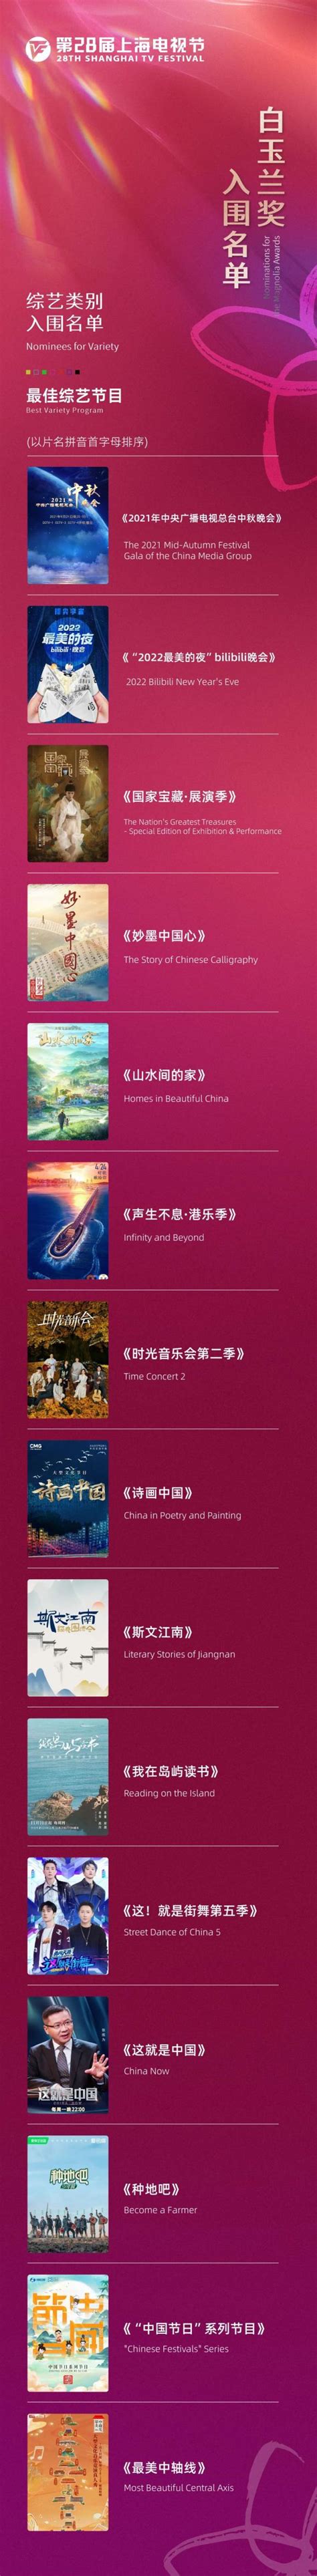 第24届上海电视节白玉兰奖中国电视剧单元入围名单公布：10部作品竞争-新闻资讯-高贝娱乐